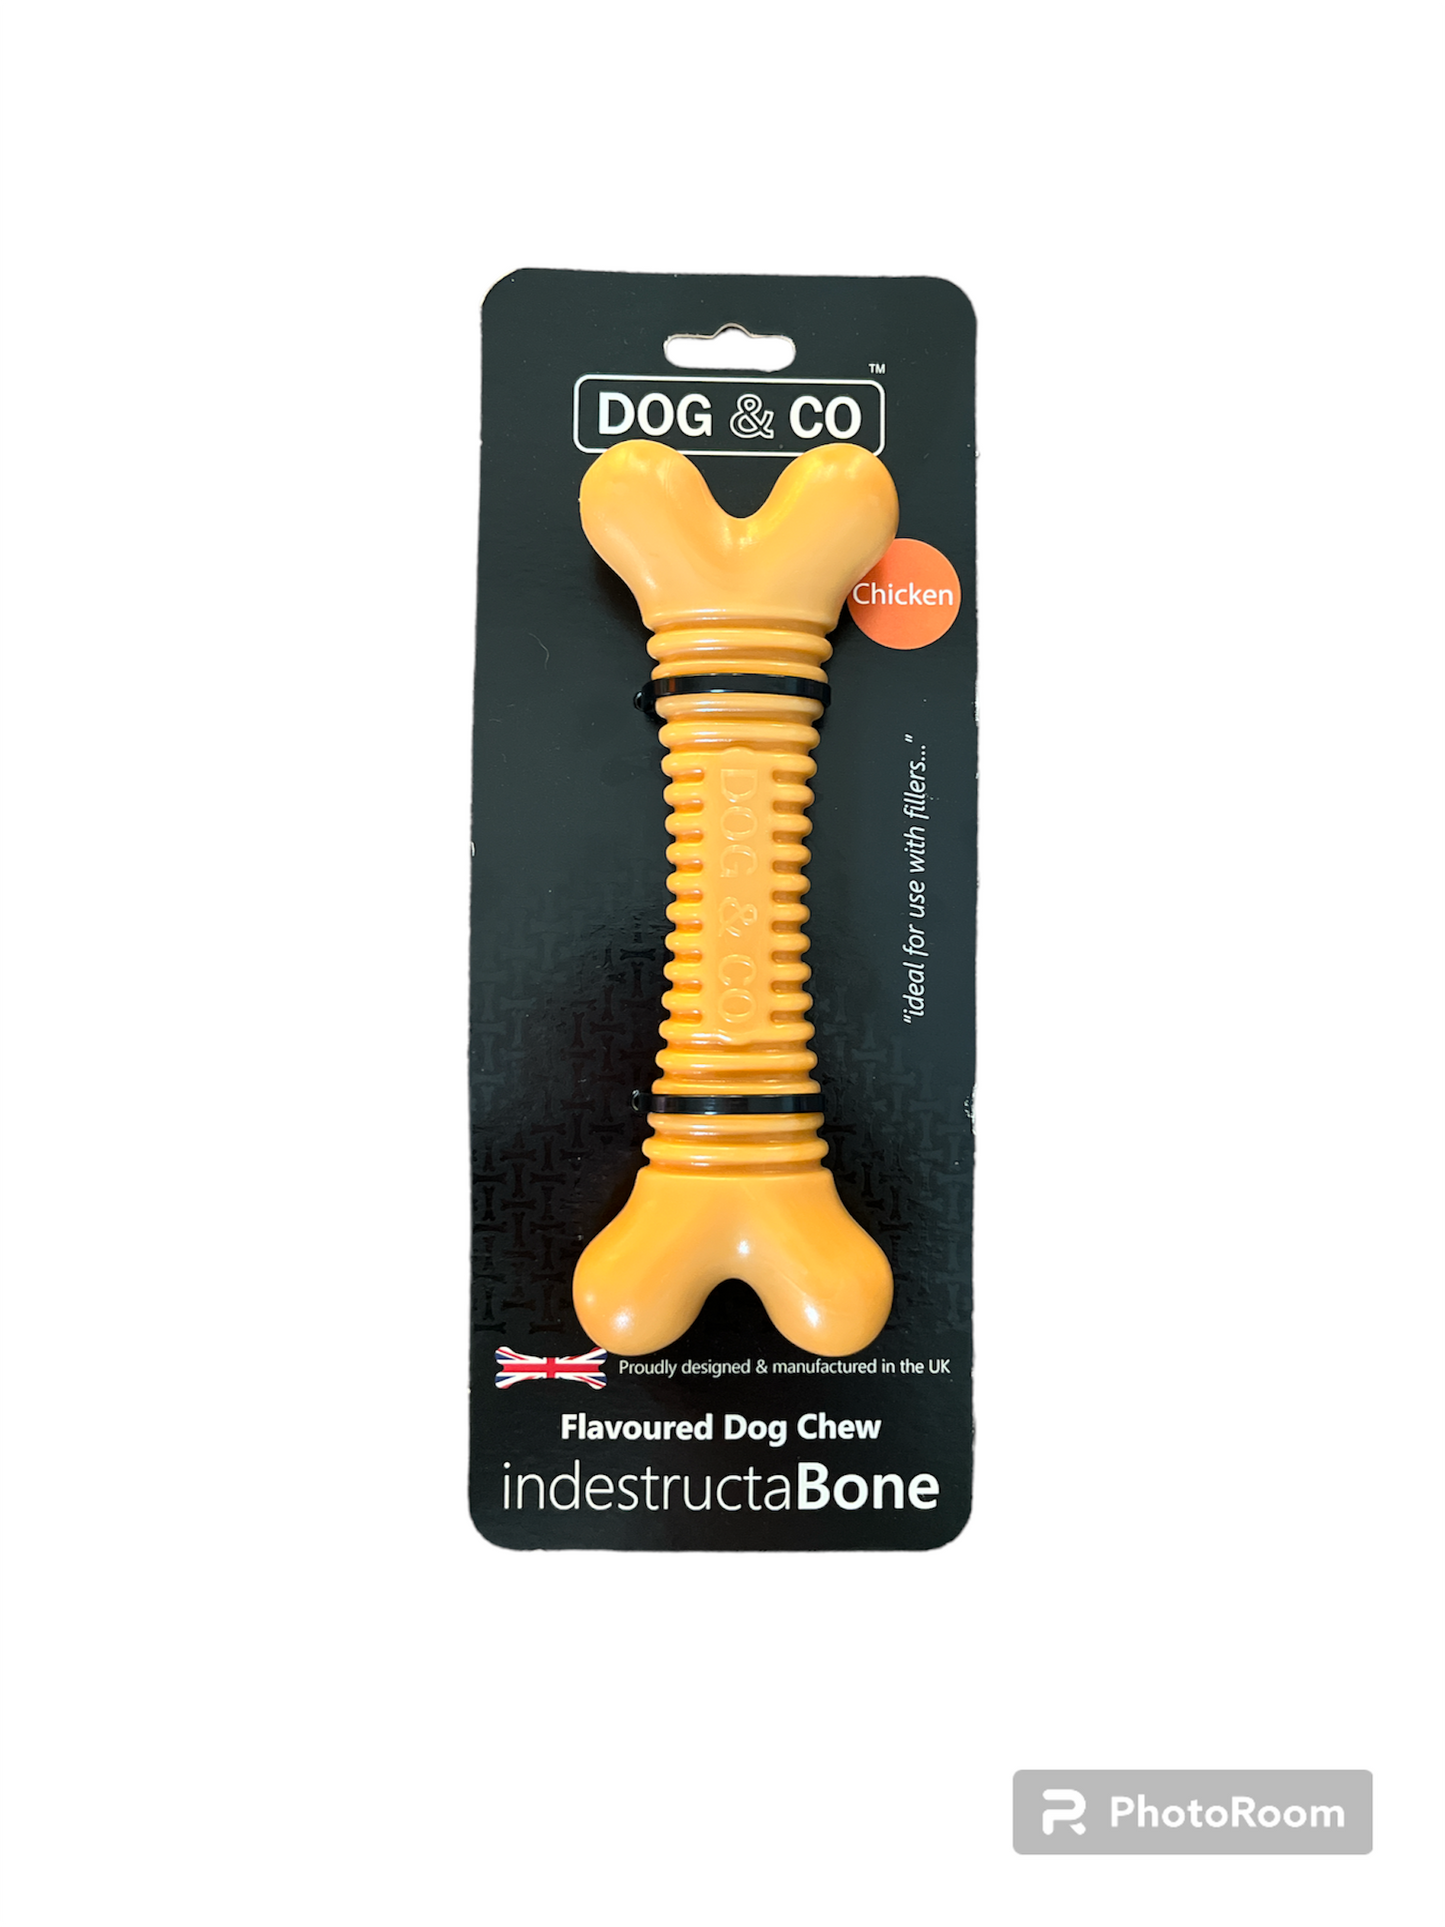 Dog & Co indestructabone - Chicken